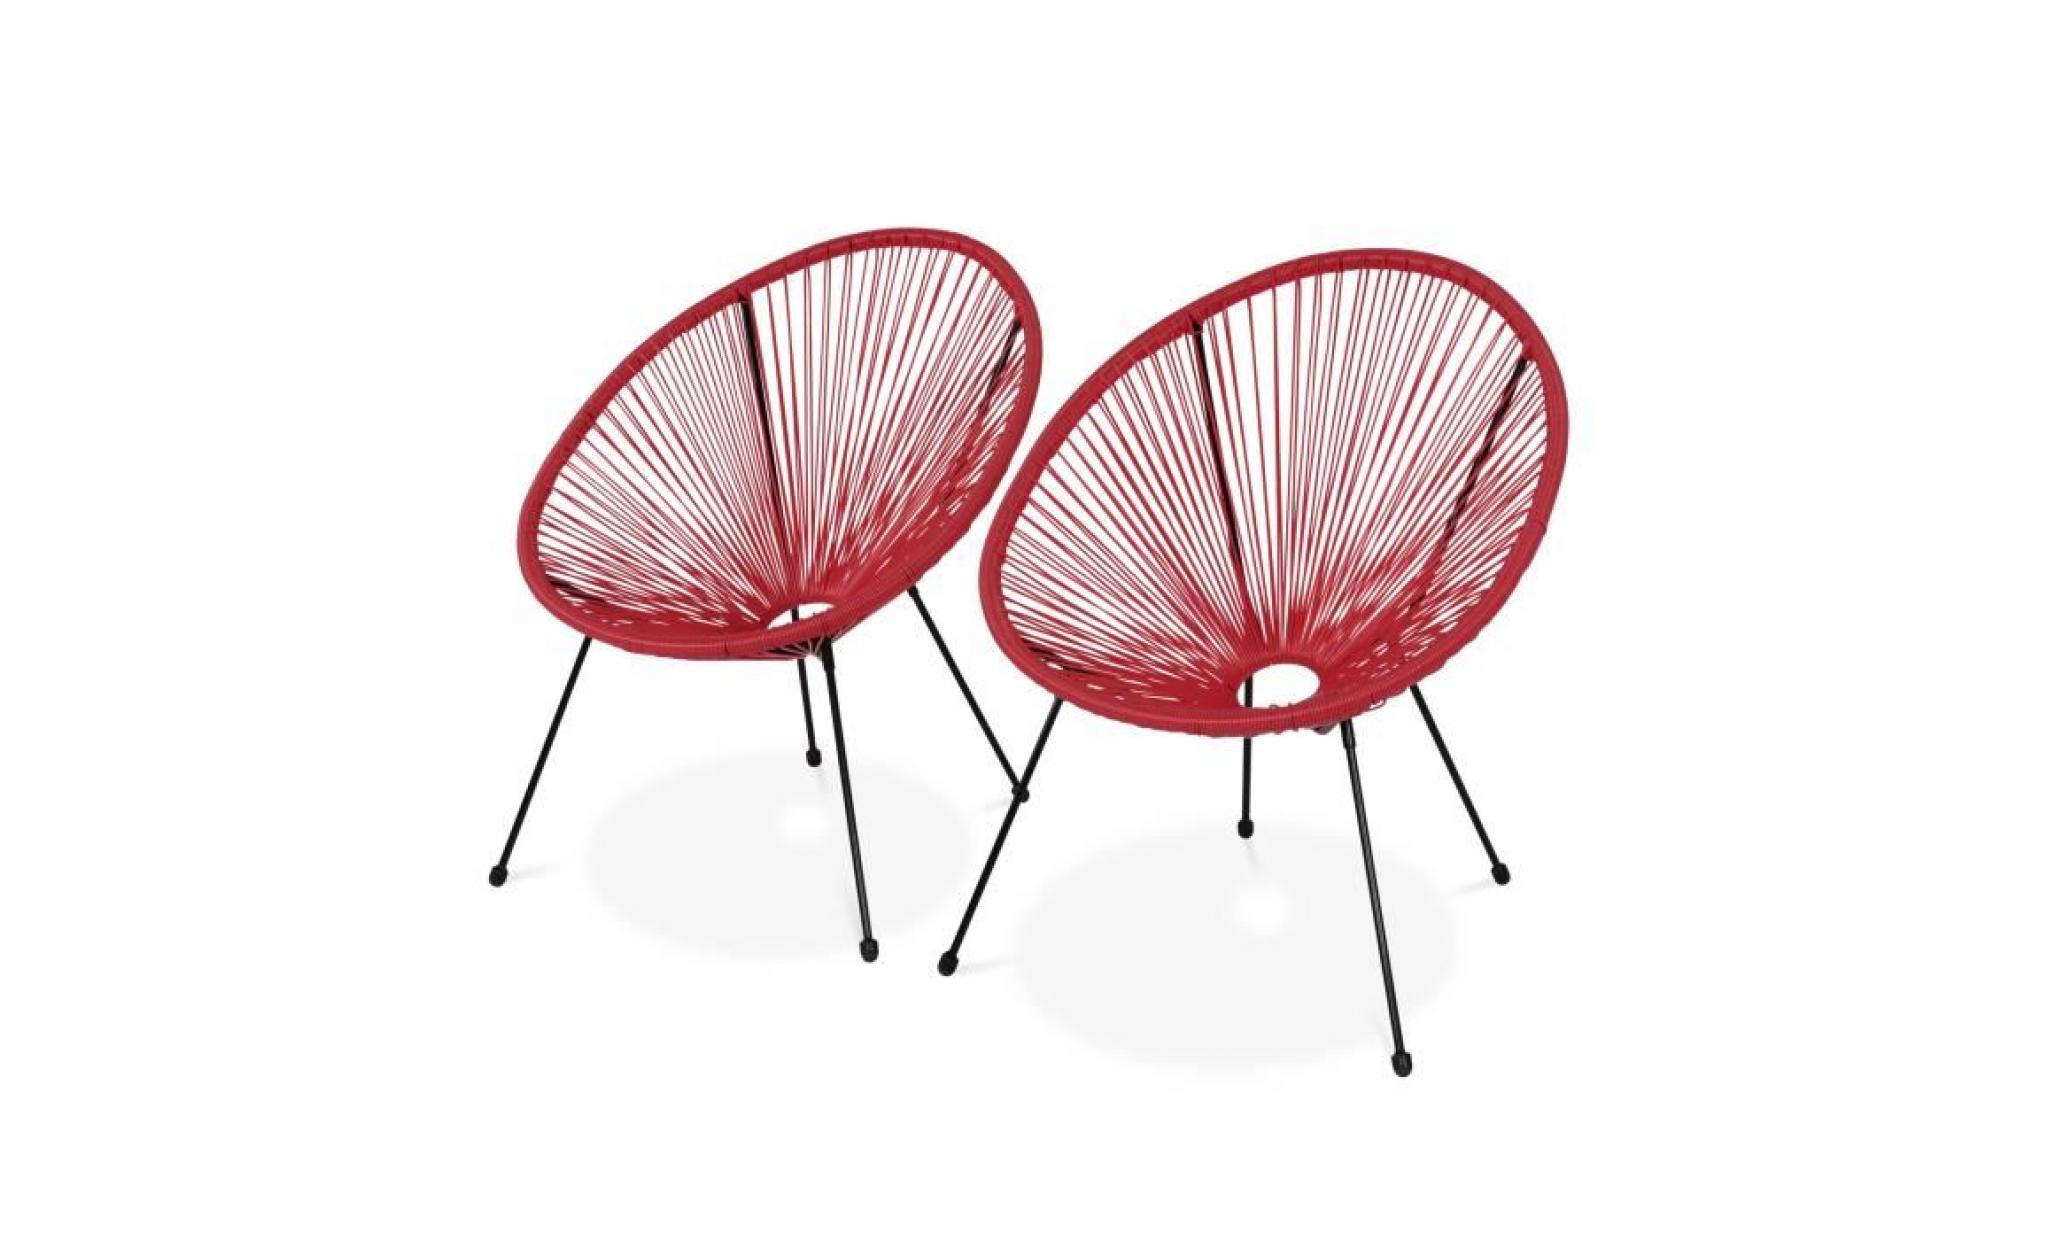 lot de 2 fauteuils design oeuf   acapulco rouge framboise   fauteuils 4 pieds design rétro, cordage plastique, intérieur / extérieur